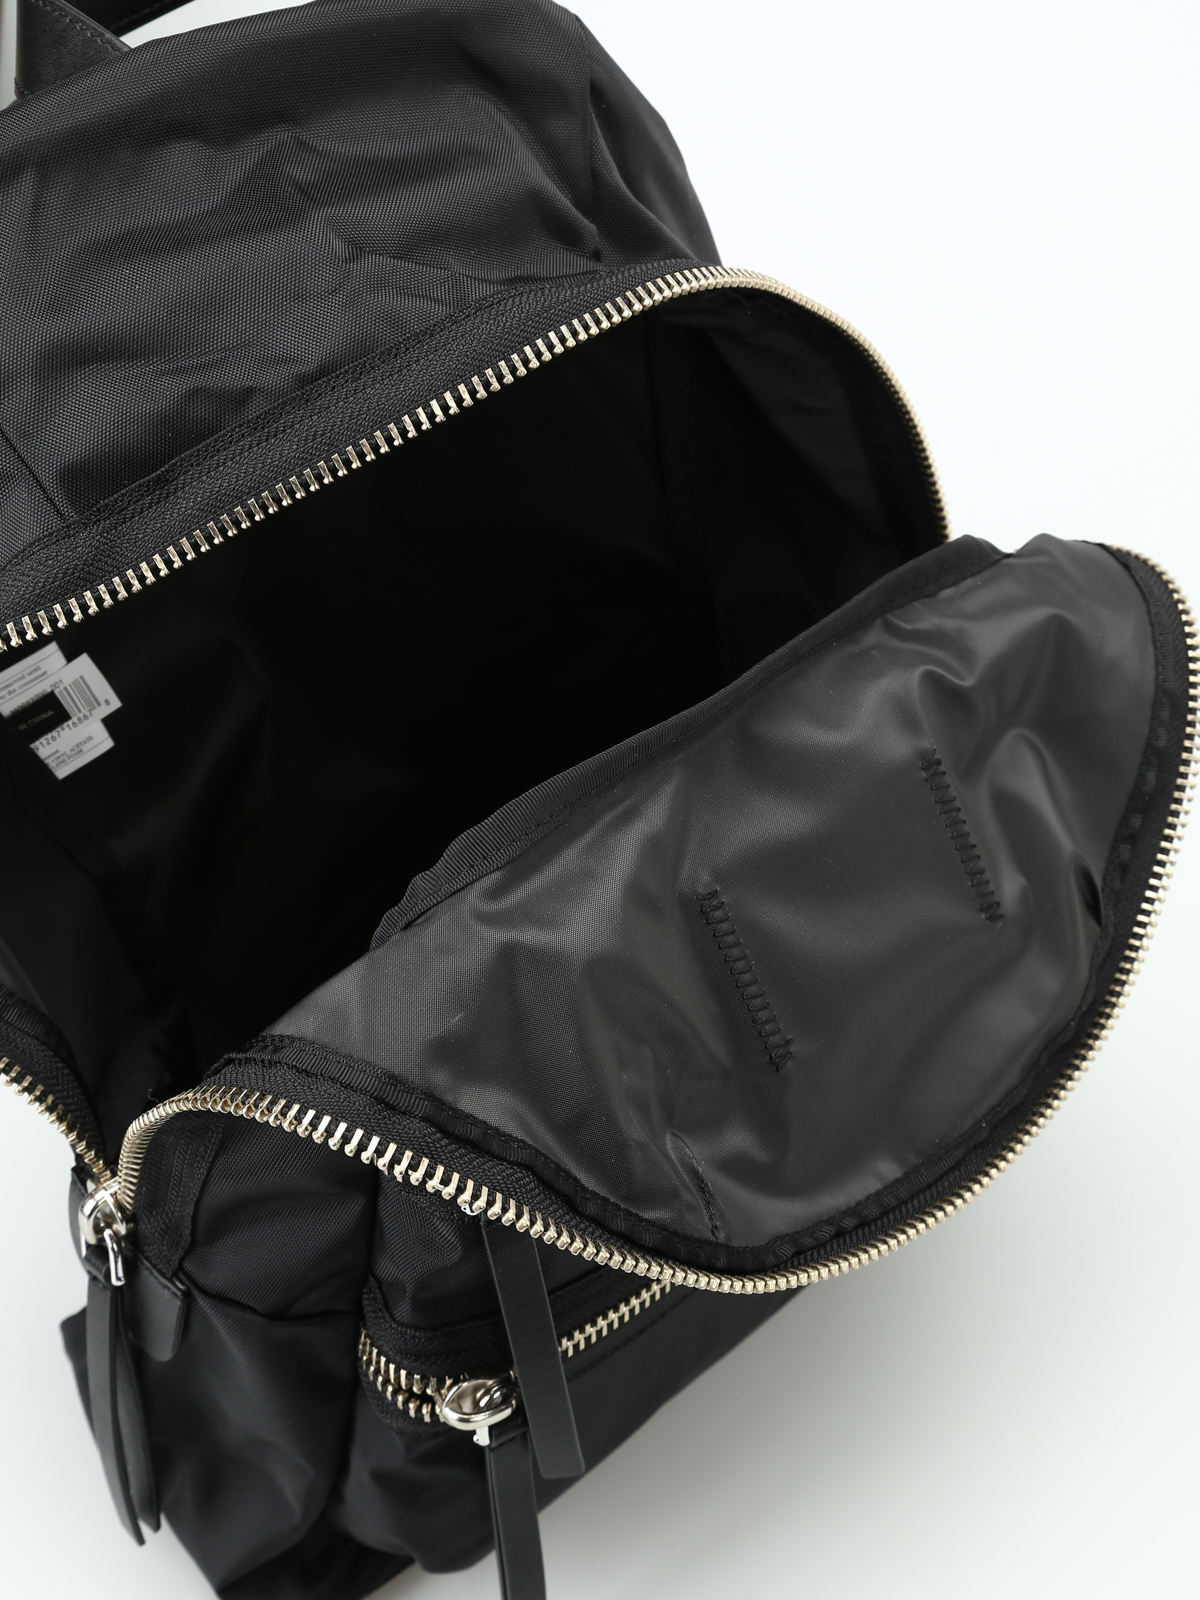 The Biker Nylon Medium Backpack, Marc Jacobs